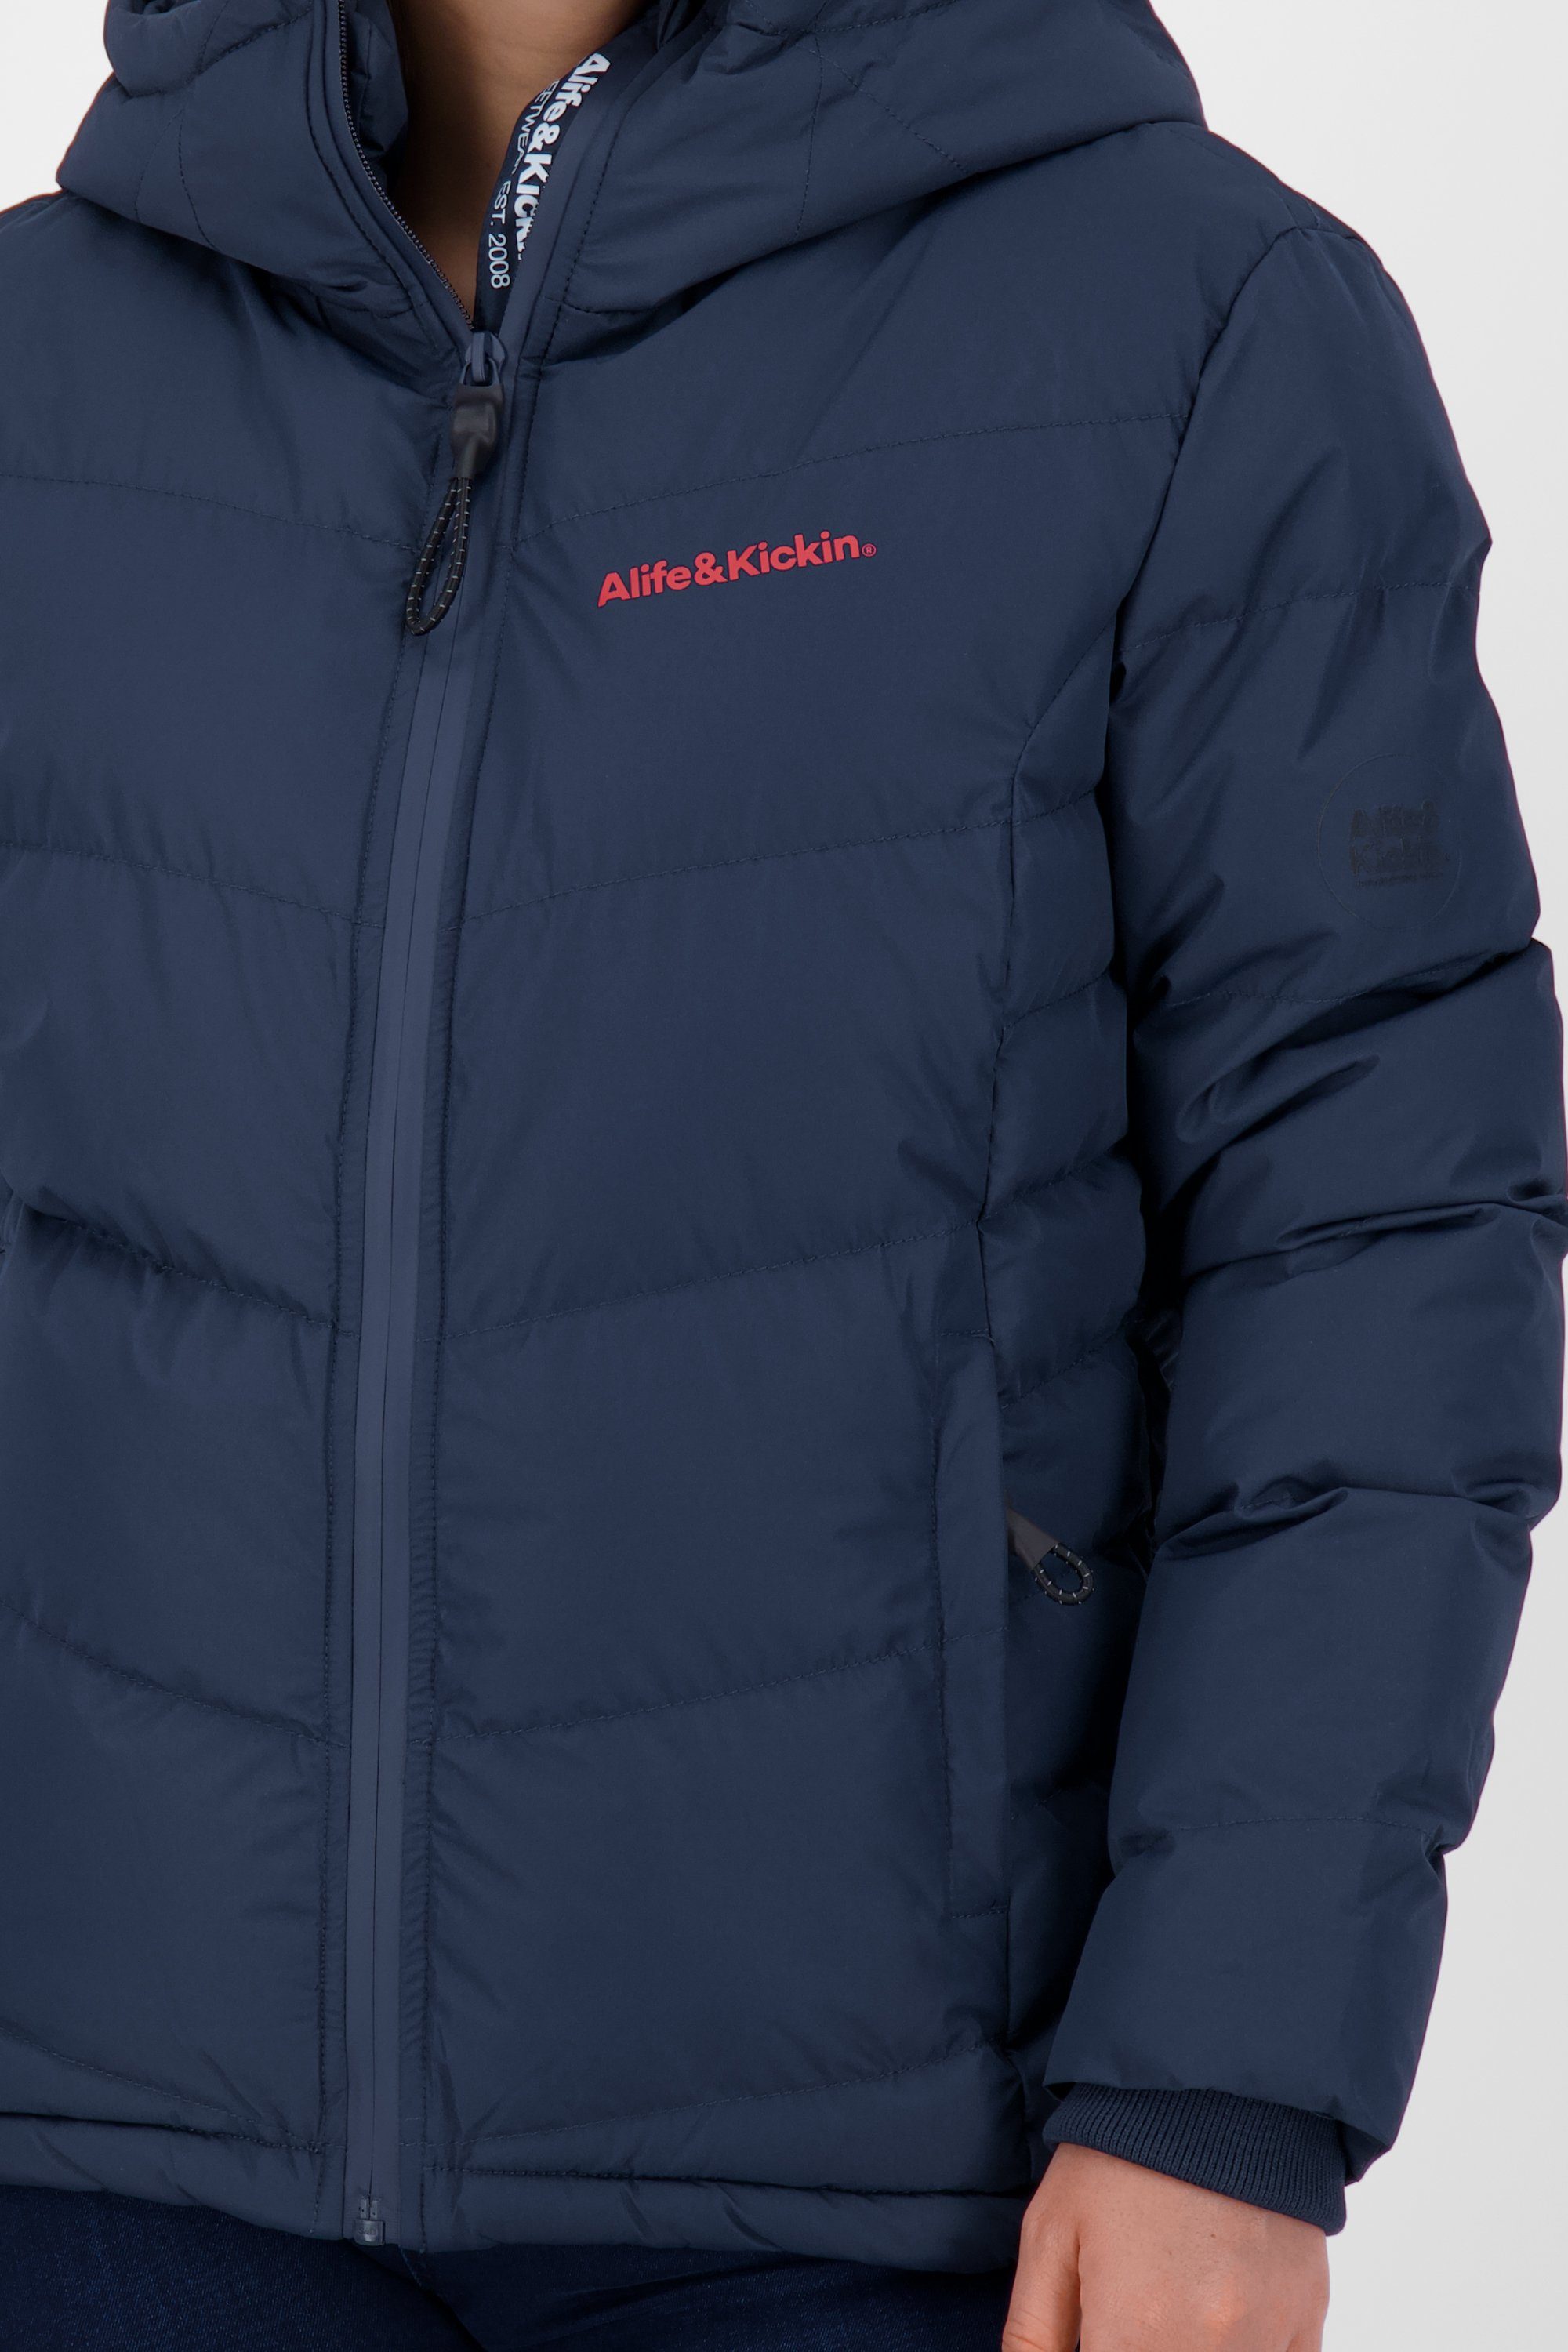 Alife & Kickin Winterjacke RaianaAK gefütterte Winterjacke, A Damen marine Jacke Jacket